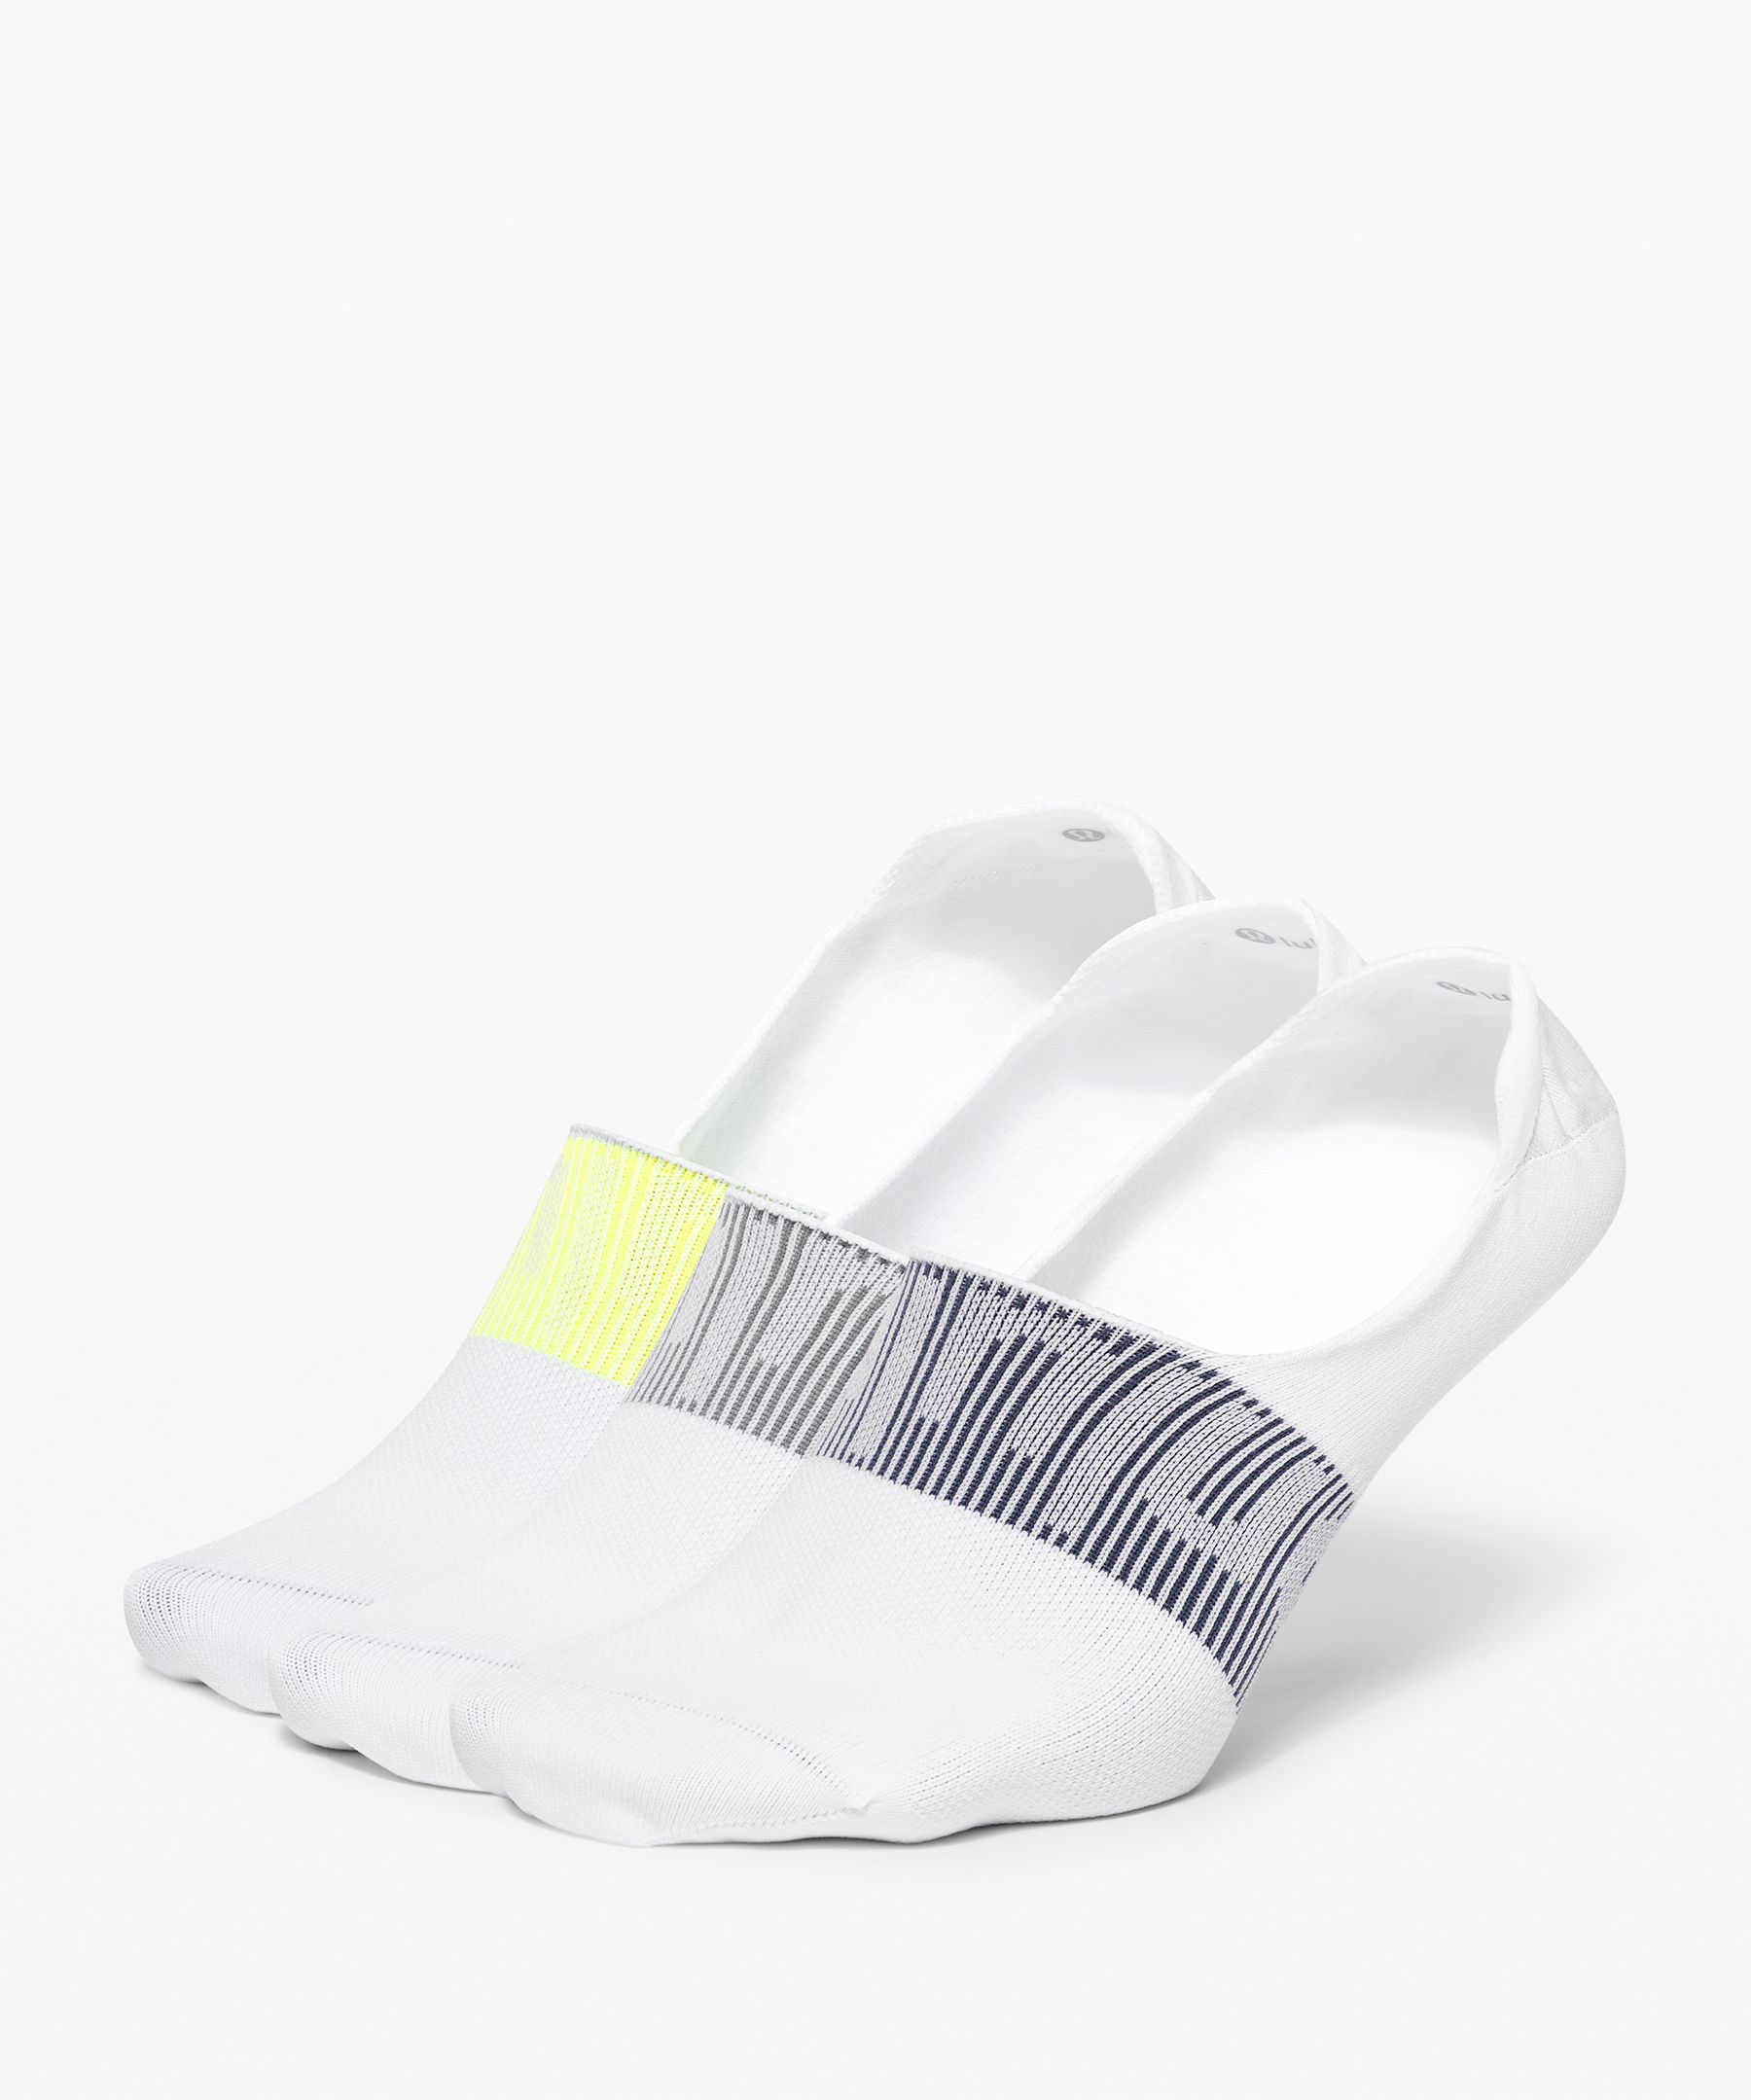 Lululemon Daily Stride No-show Socks 3 Pack In White/asphalt/highlight Yellow